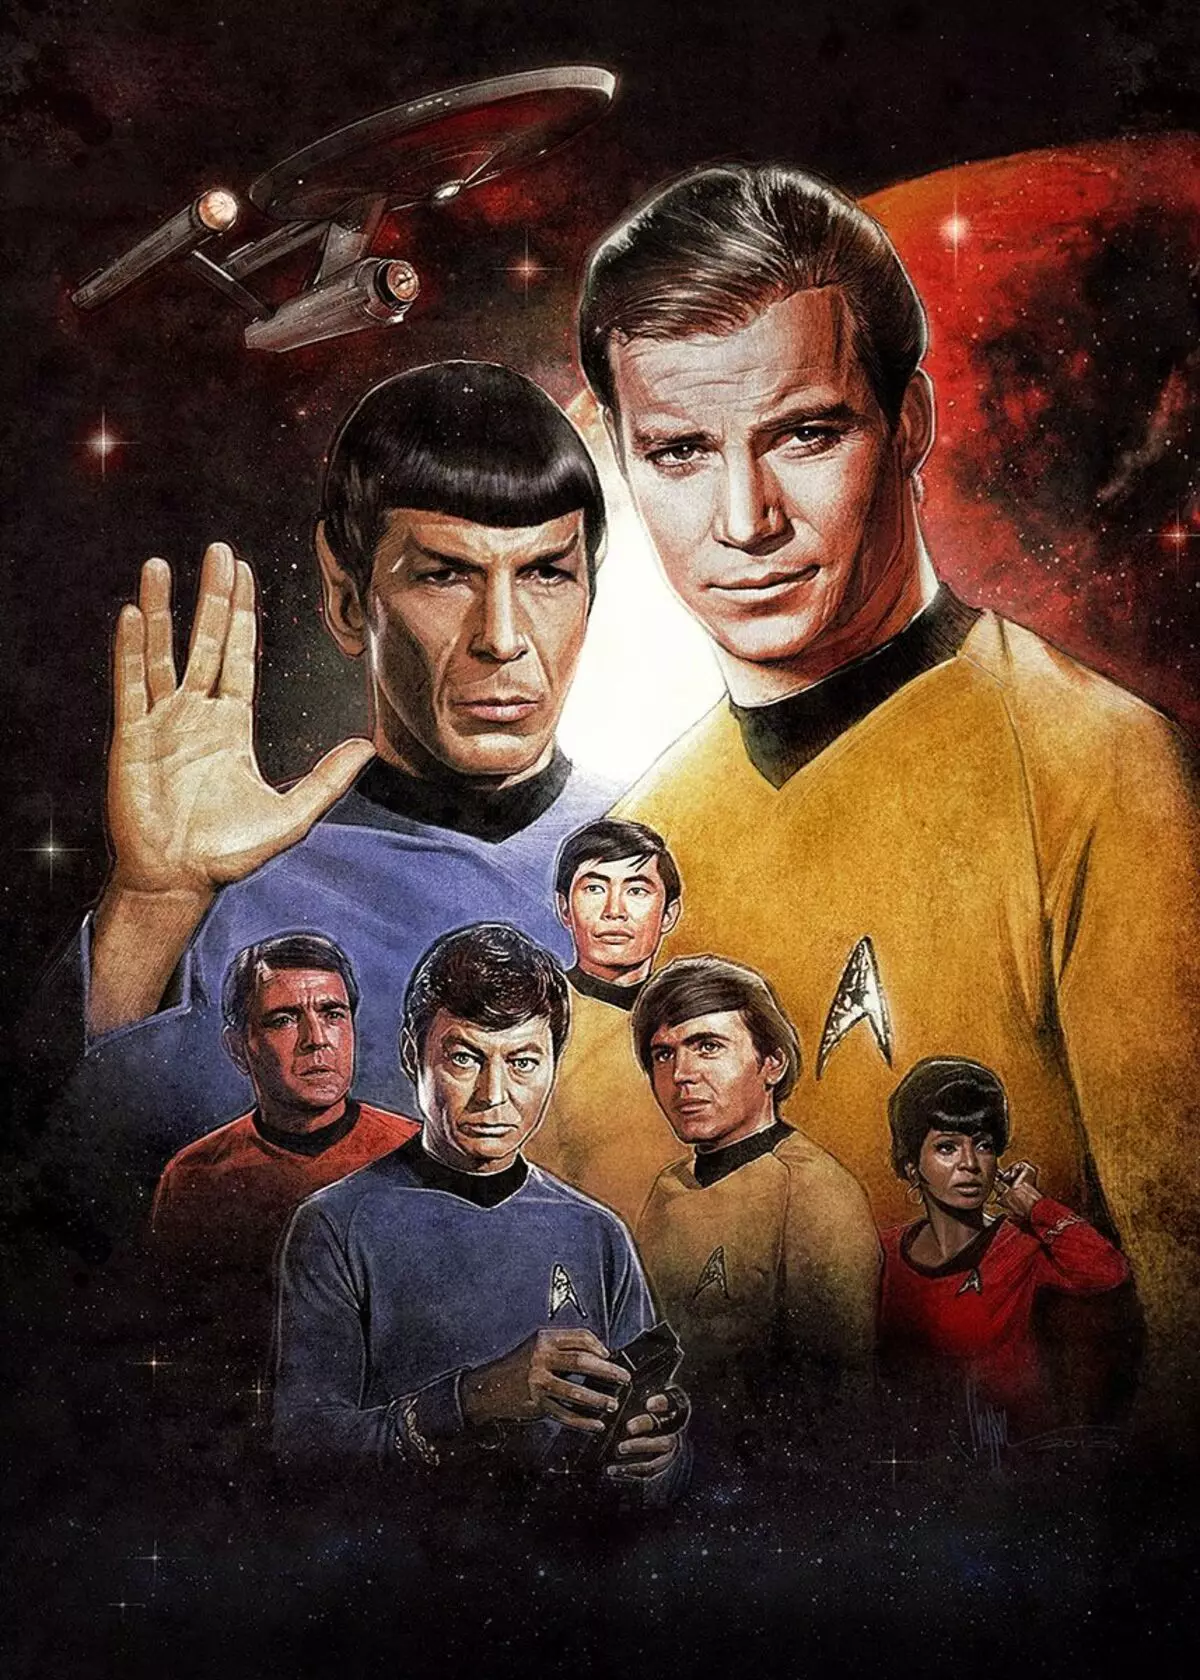 Kapiteni Kirk na Spock: William Shetner yubashye kwibuka Leonard nimoy kuva mu nzira y'inyenyeri 127609_1